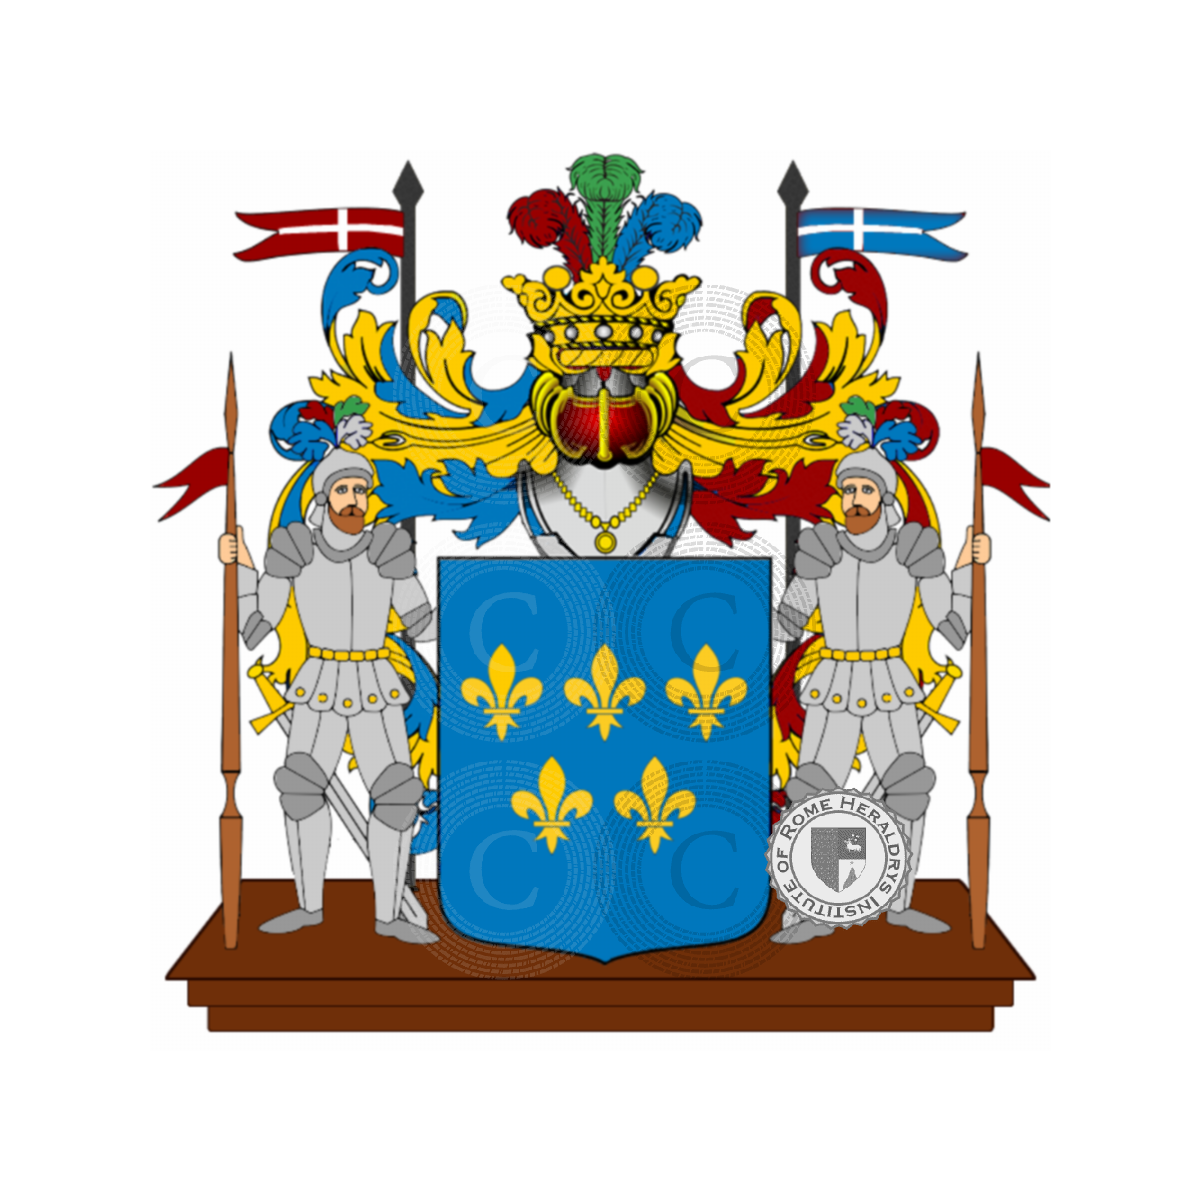 Wappen der Familie Malle